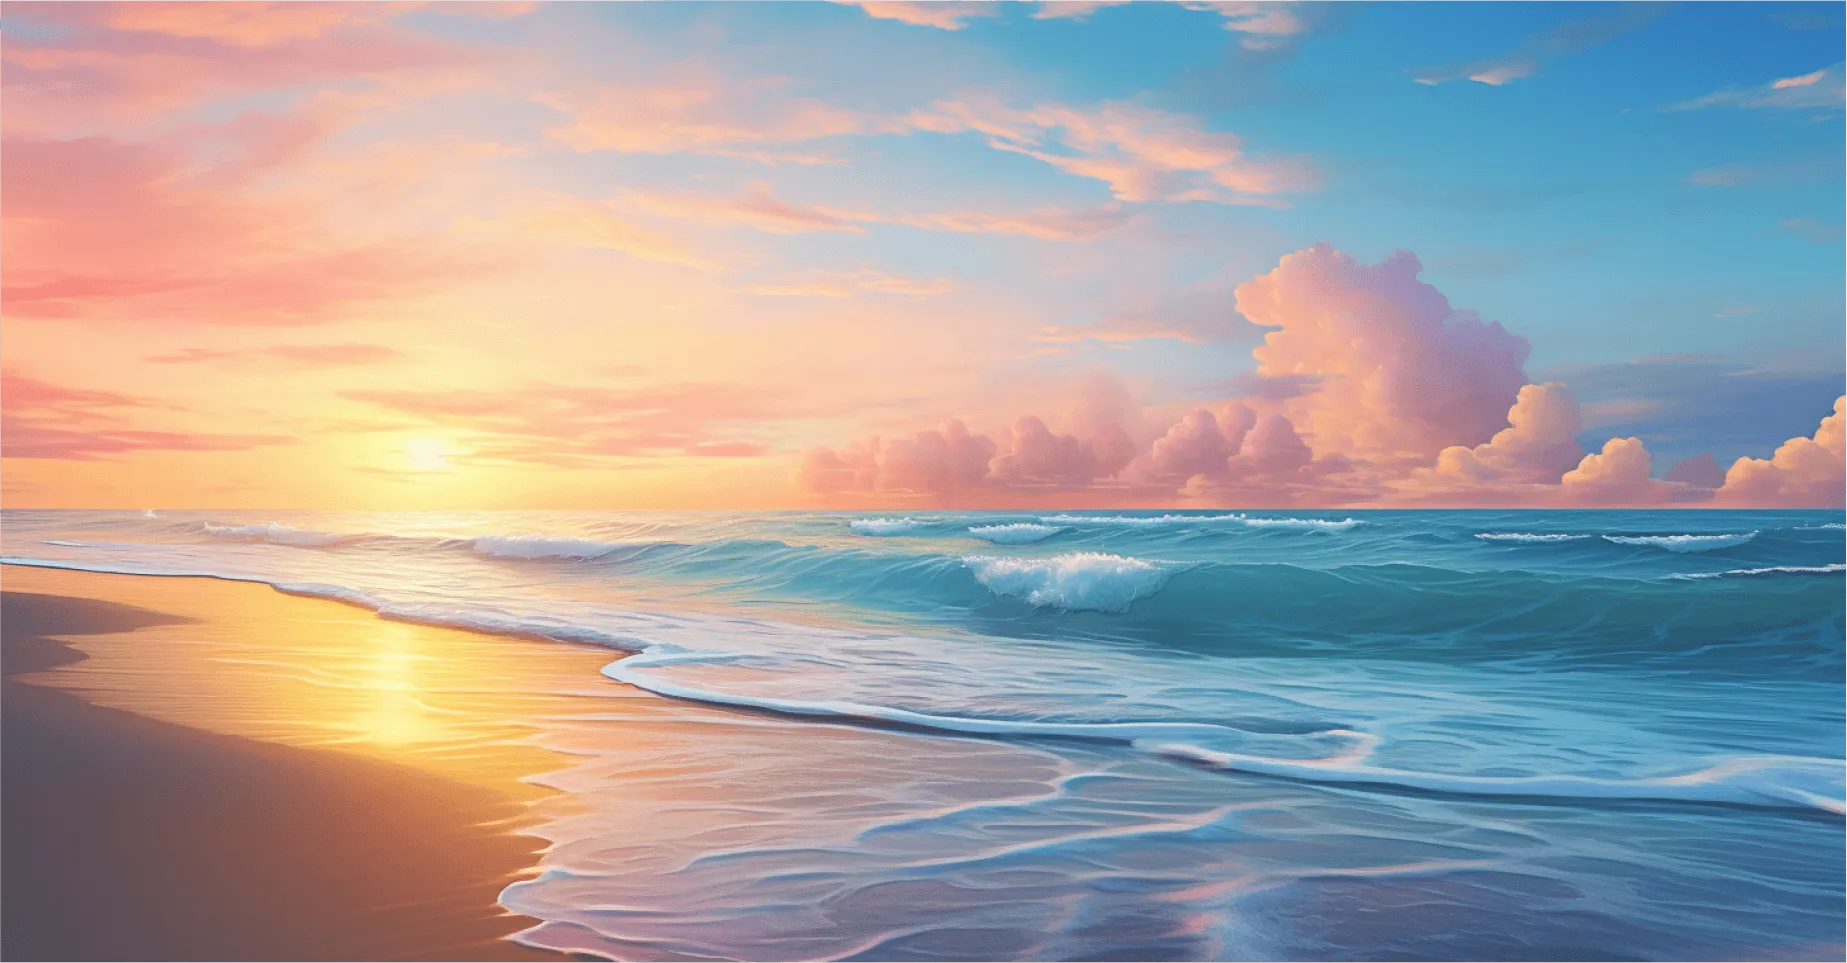 Background Sunrise Wave Image